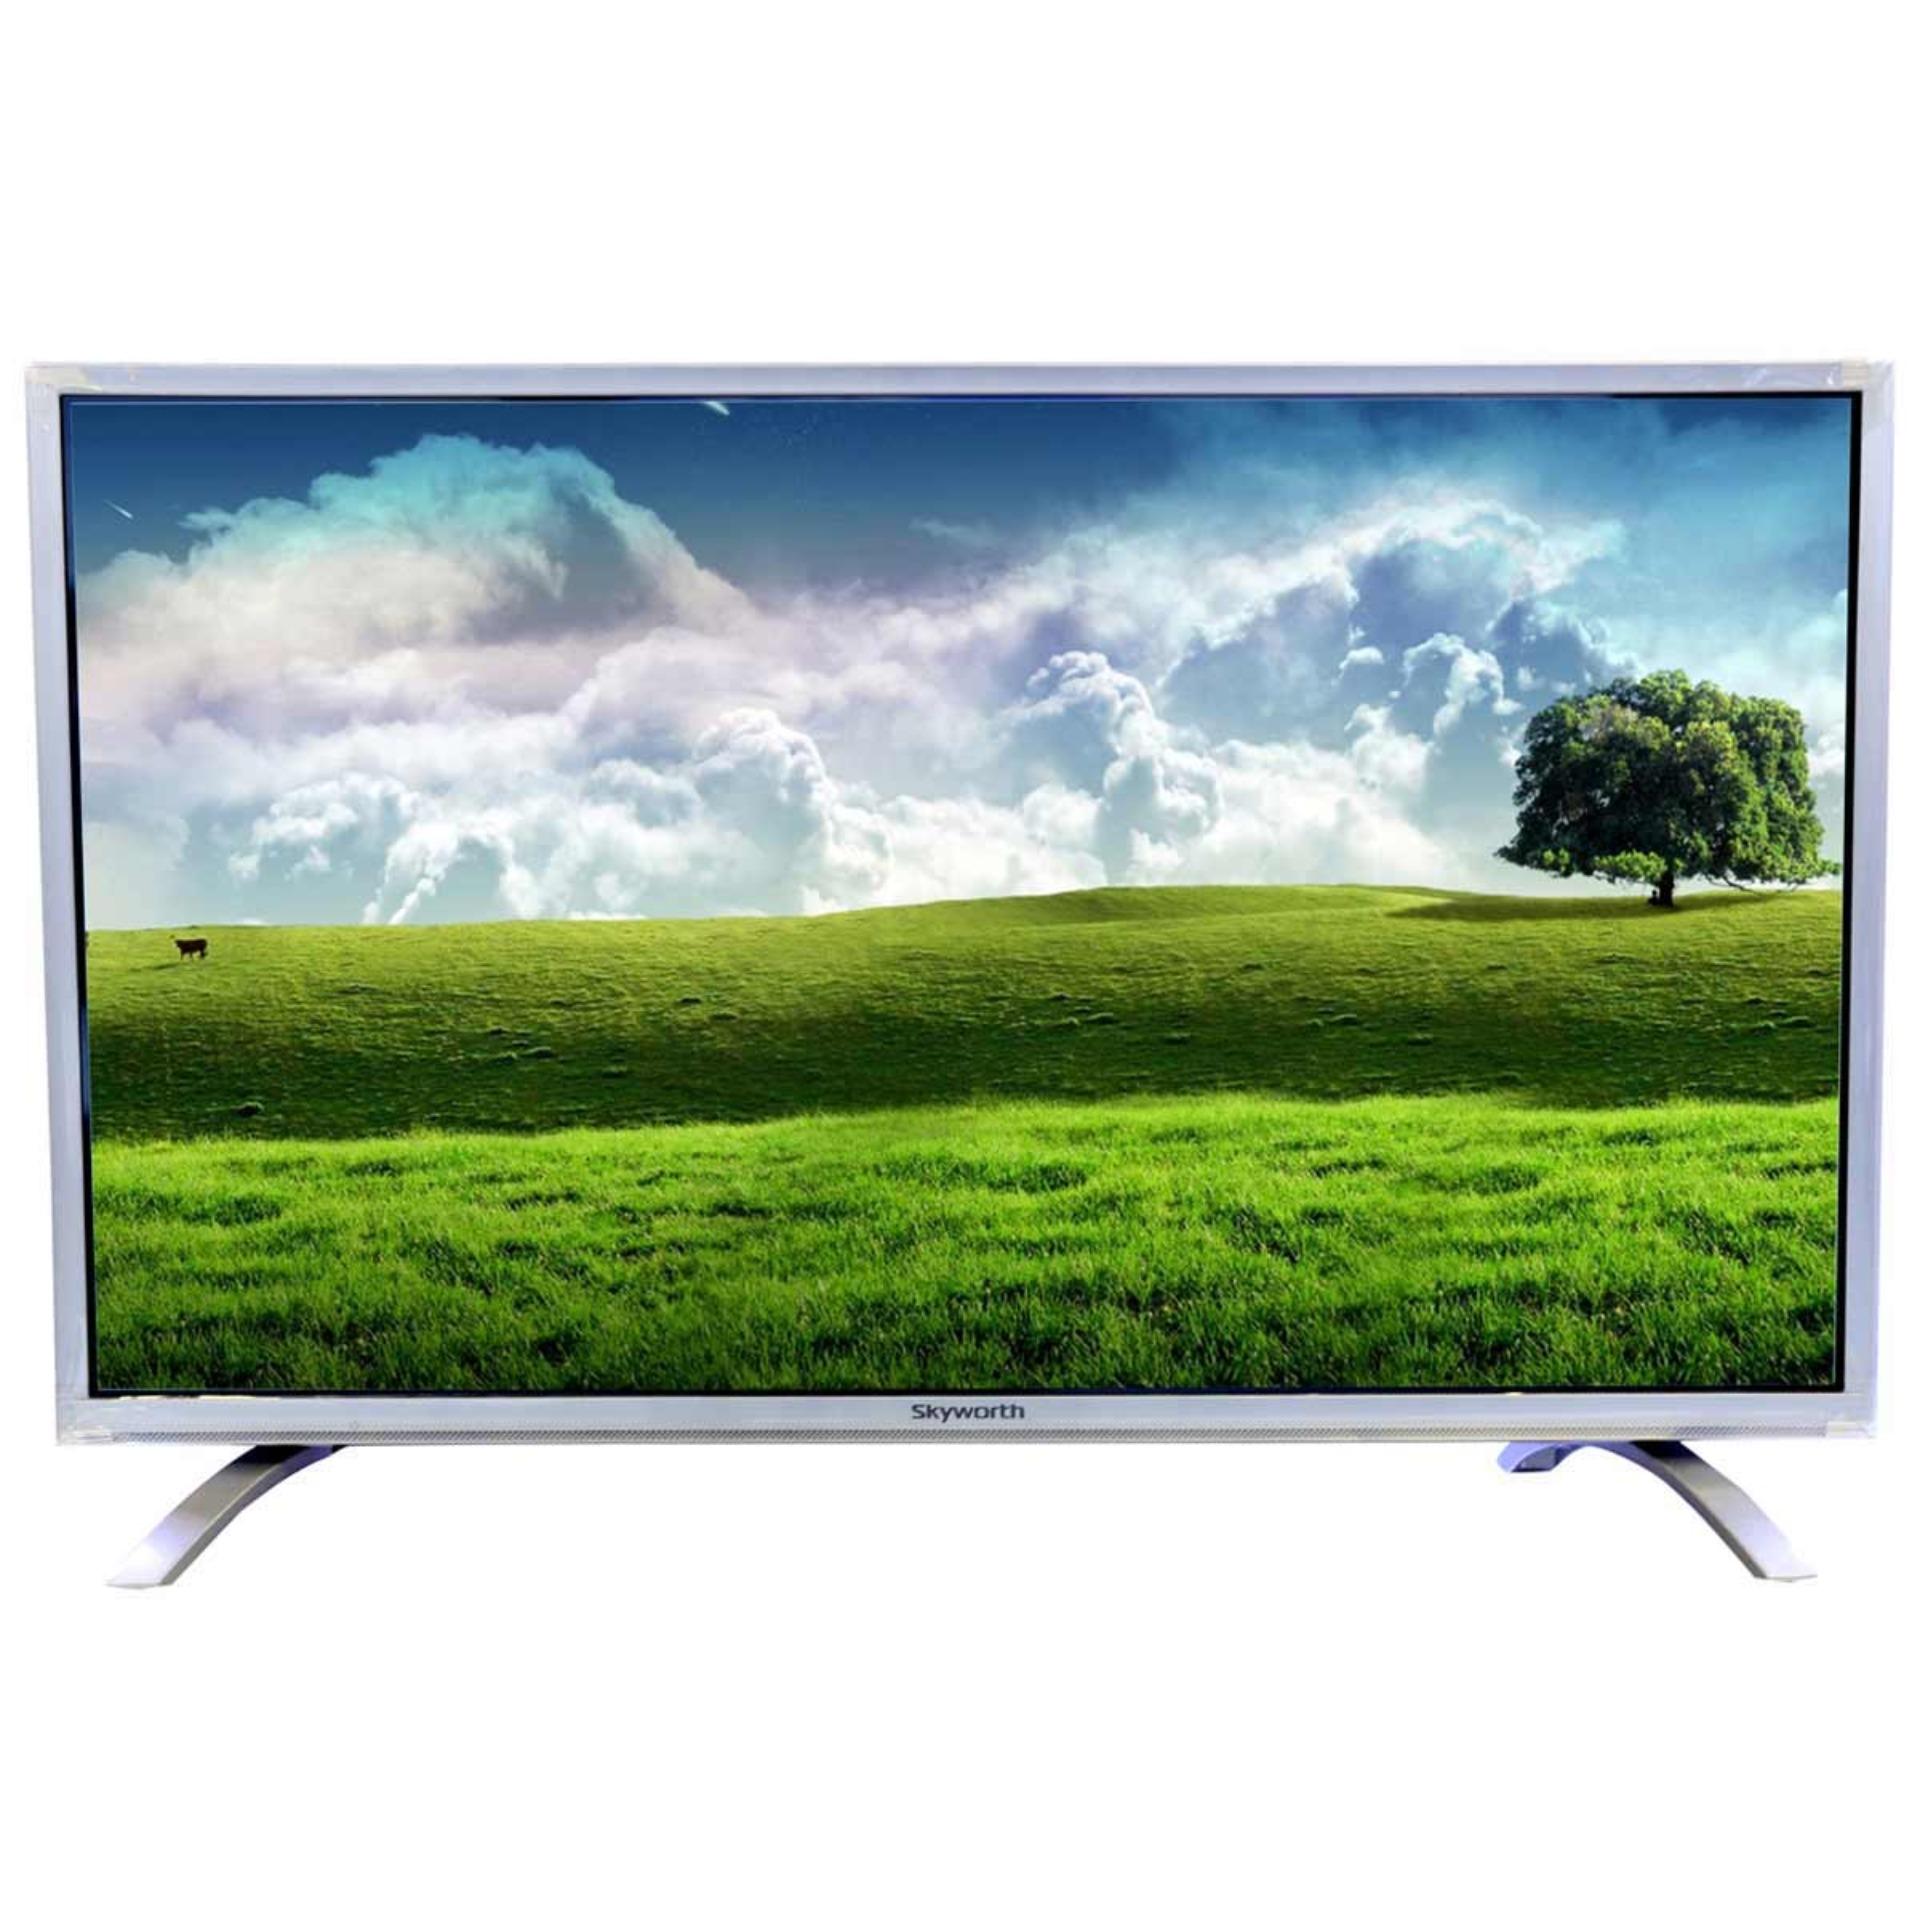 Smart TV Skyworth 43 inch Full HD – Model 43W710 (Đen) - Hãng phân phối chính thức